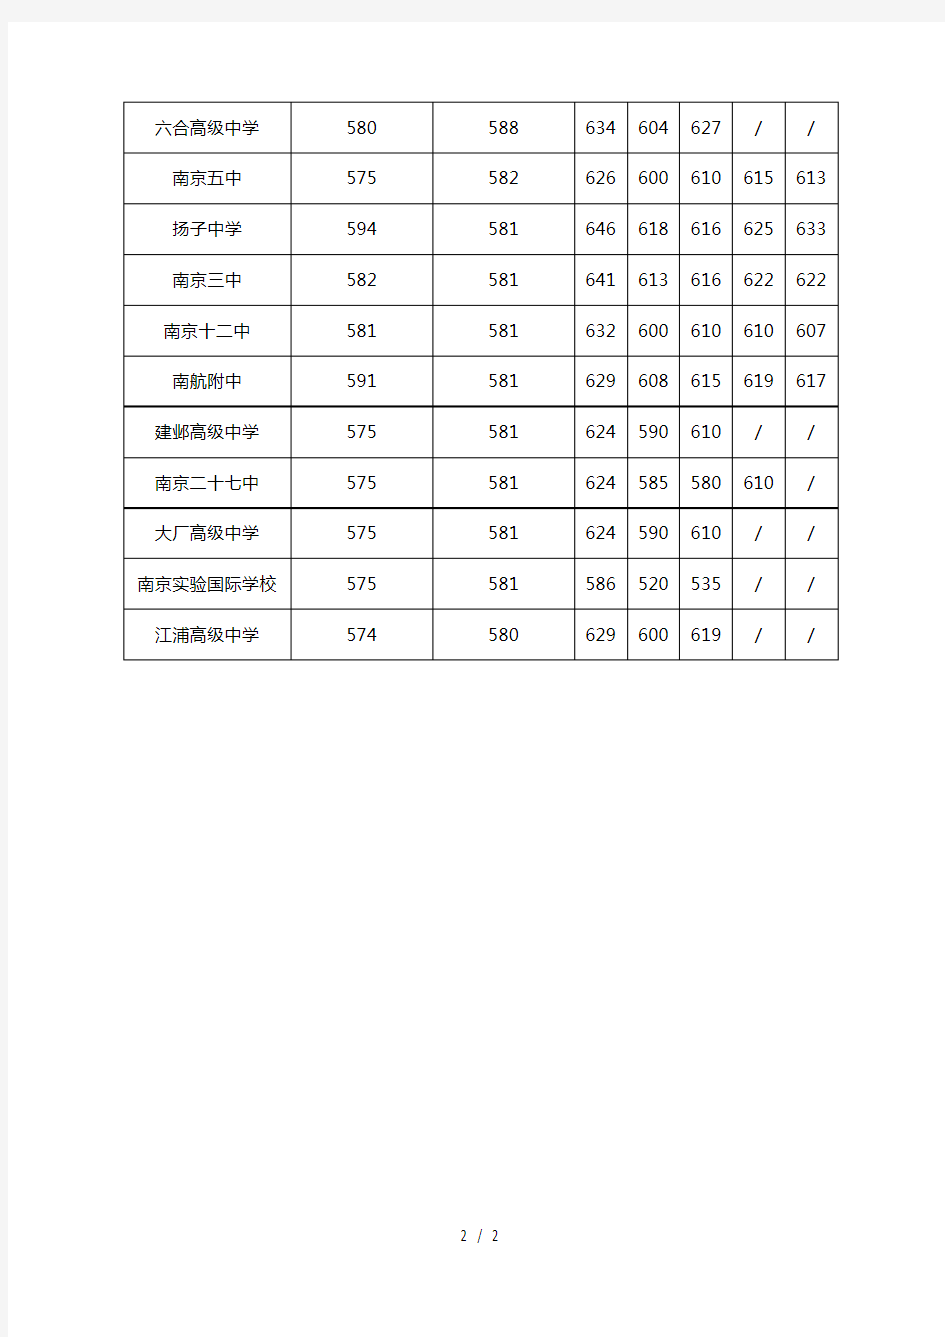 2010-2016南京各高中历年中考录取分数线